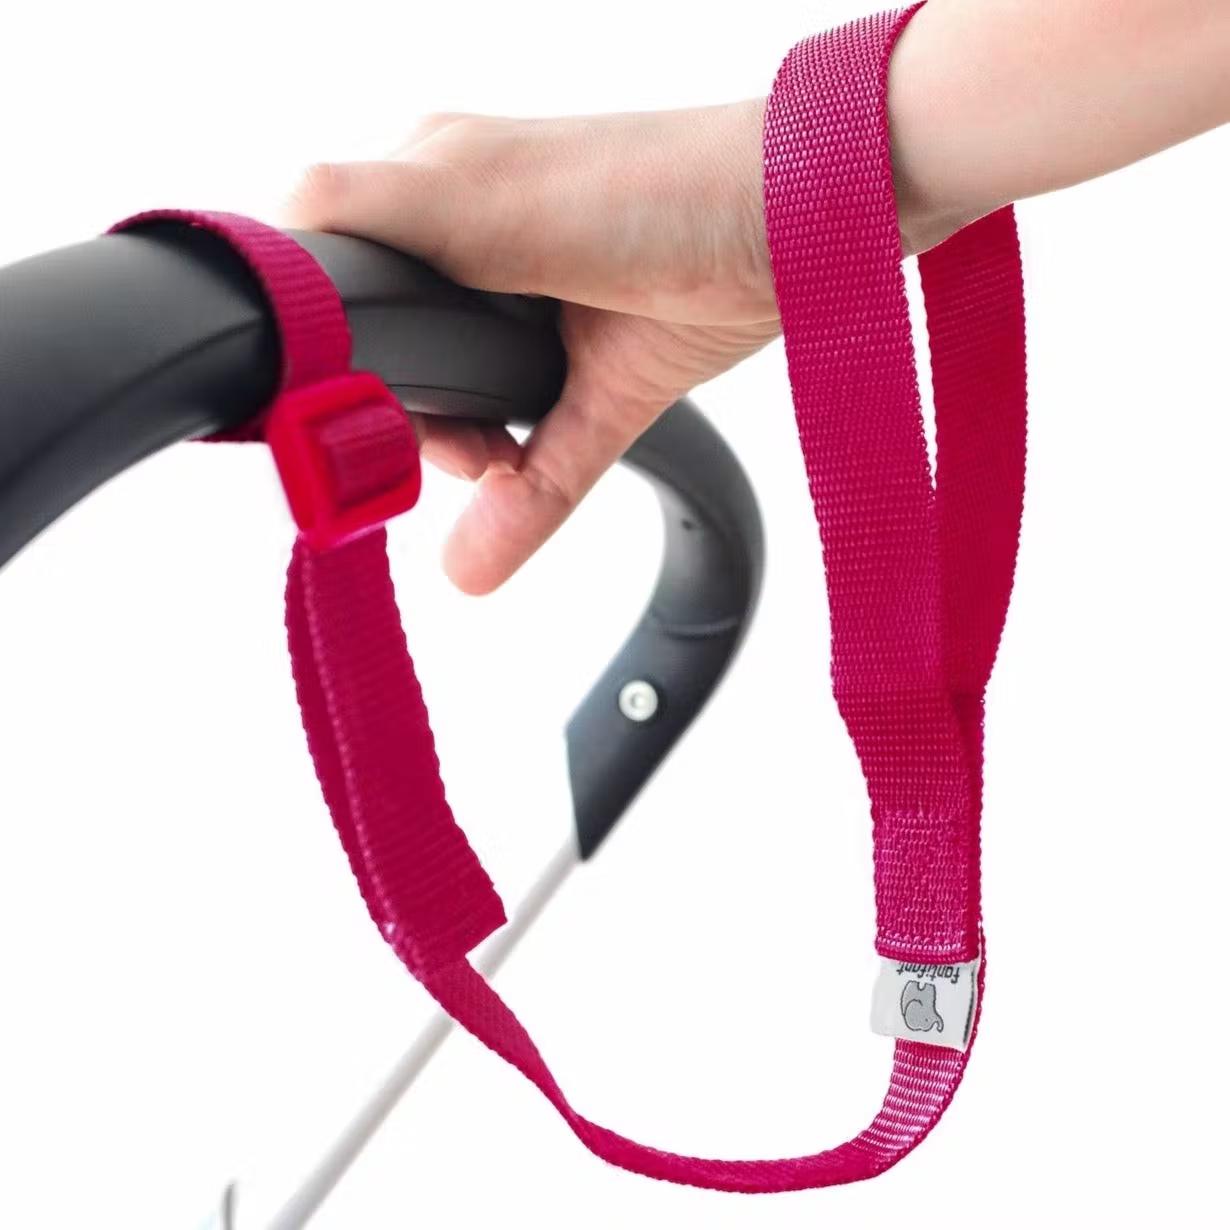 Length-Adjustable Stroller Safety Loop